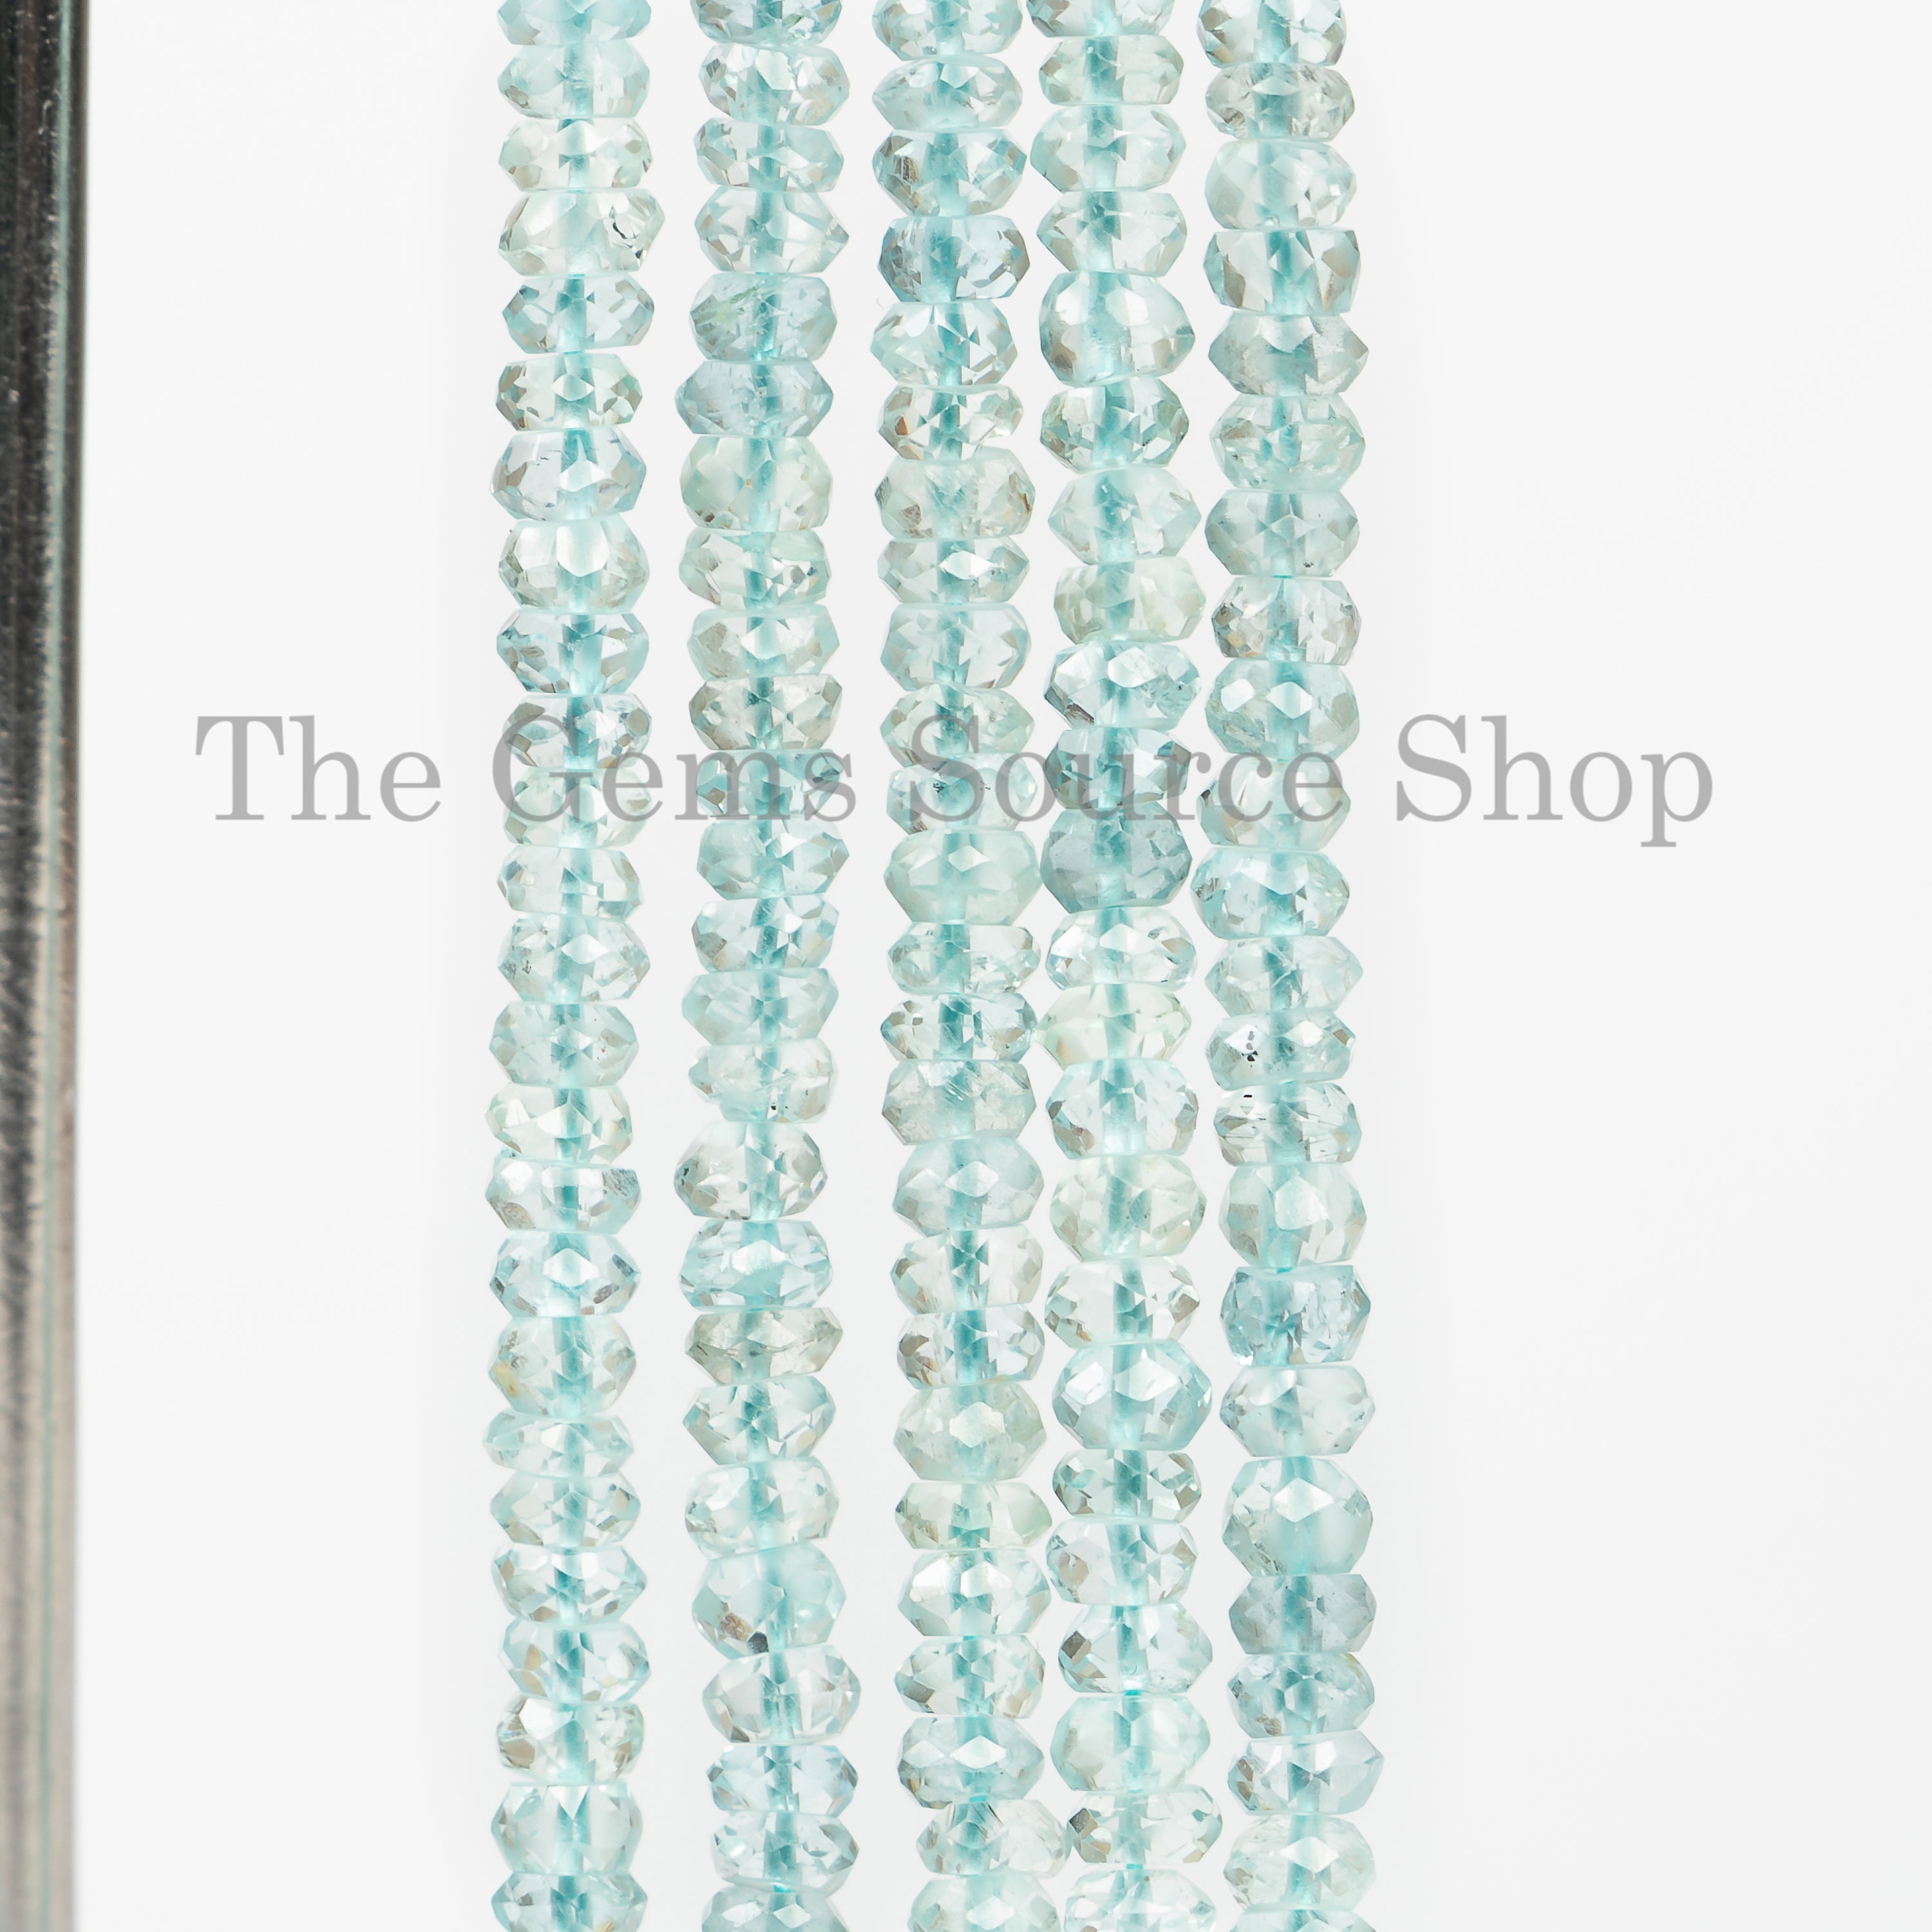 Aquamarine Beads, Aquamarine Faceted Beads, Aquamarine Rondelle Beads, Aquamarine Gemstone Beads